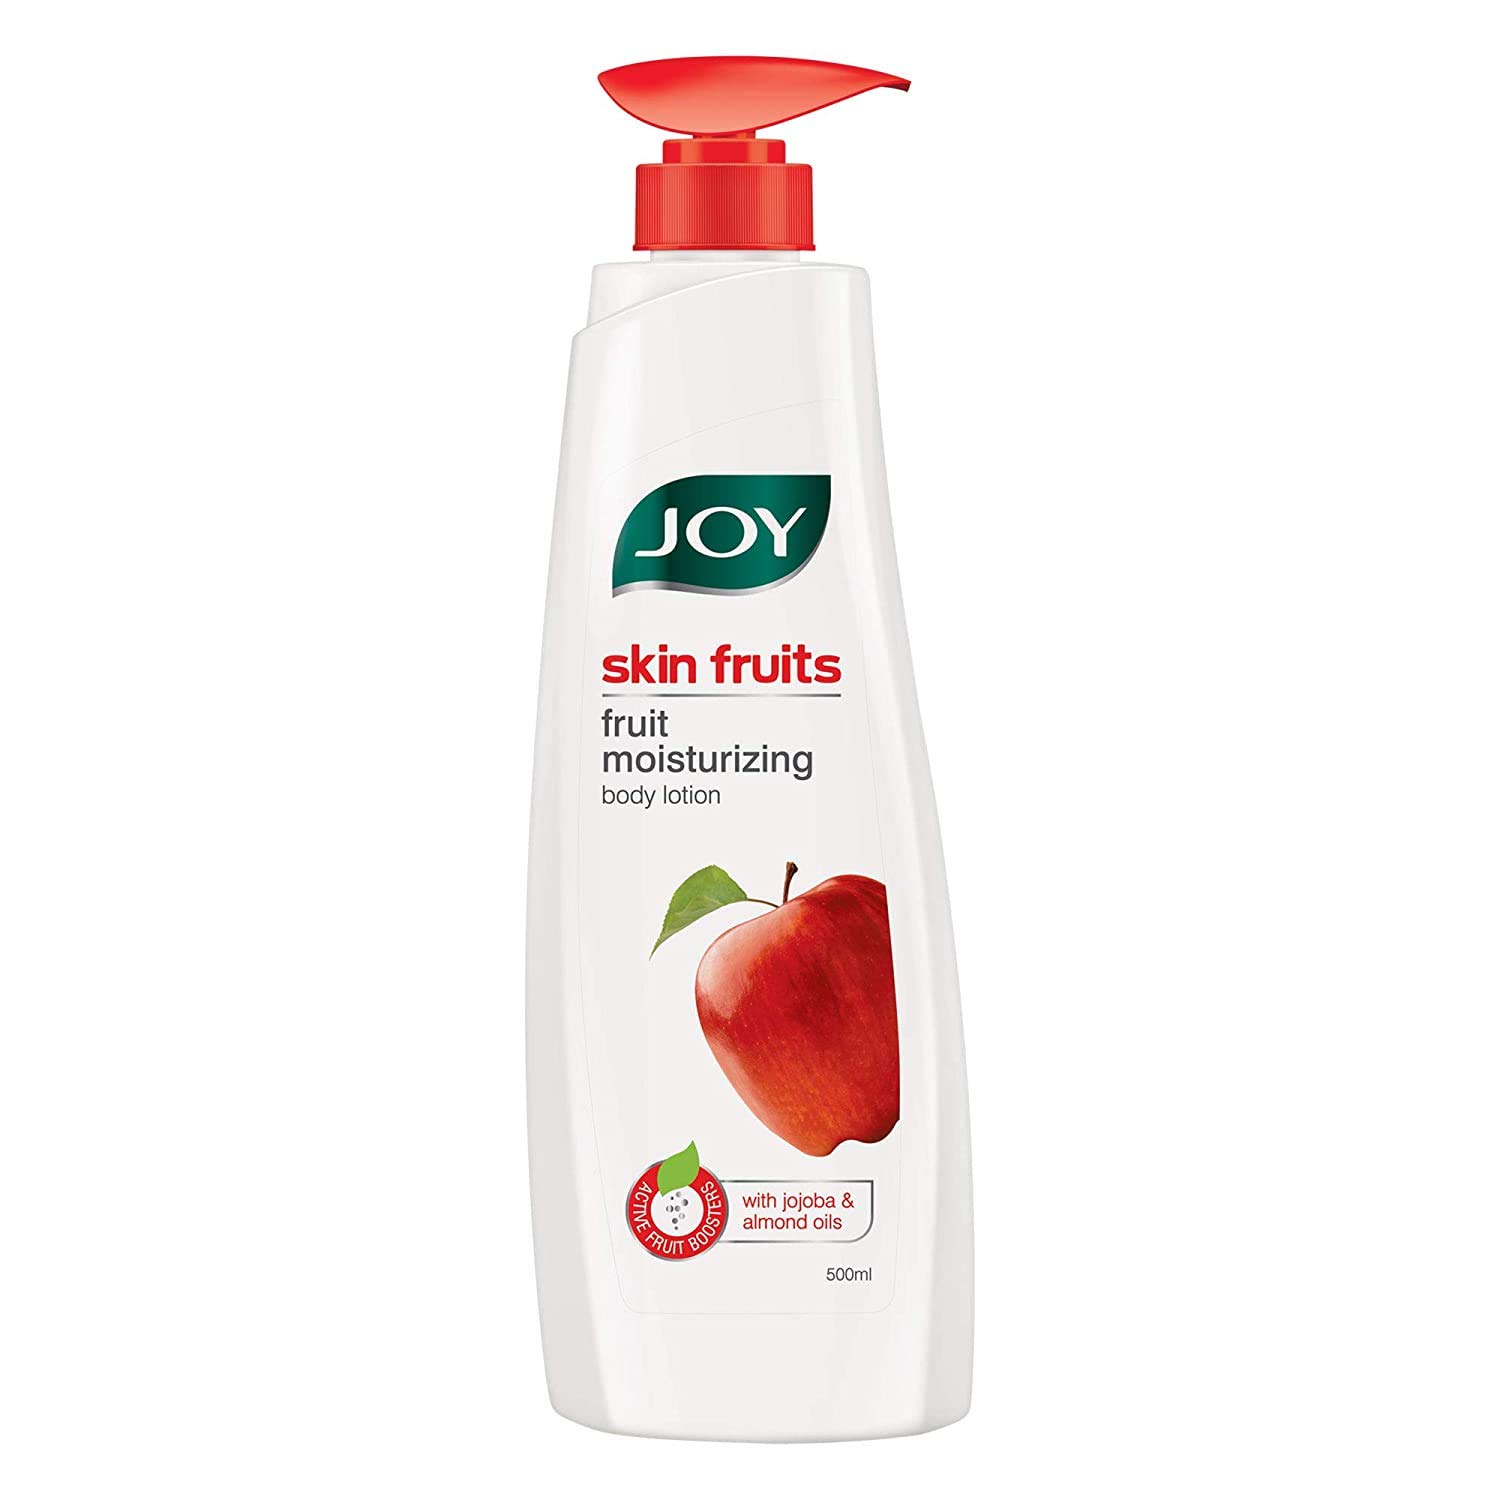 Joy Skin Fruits Fruit Moisturizing Body Lotion, 